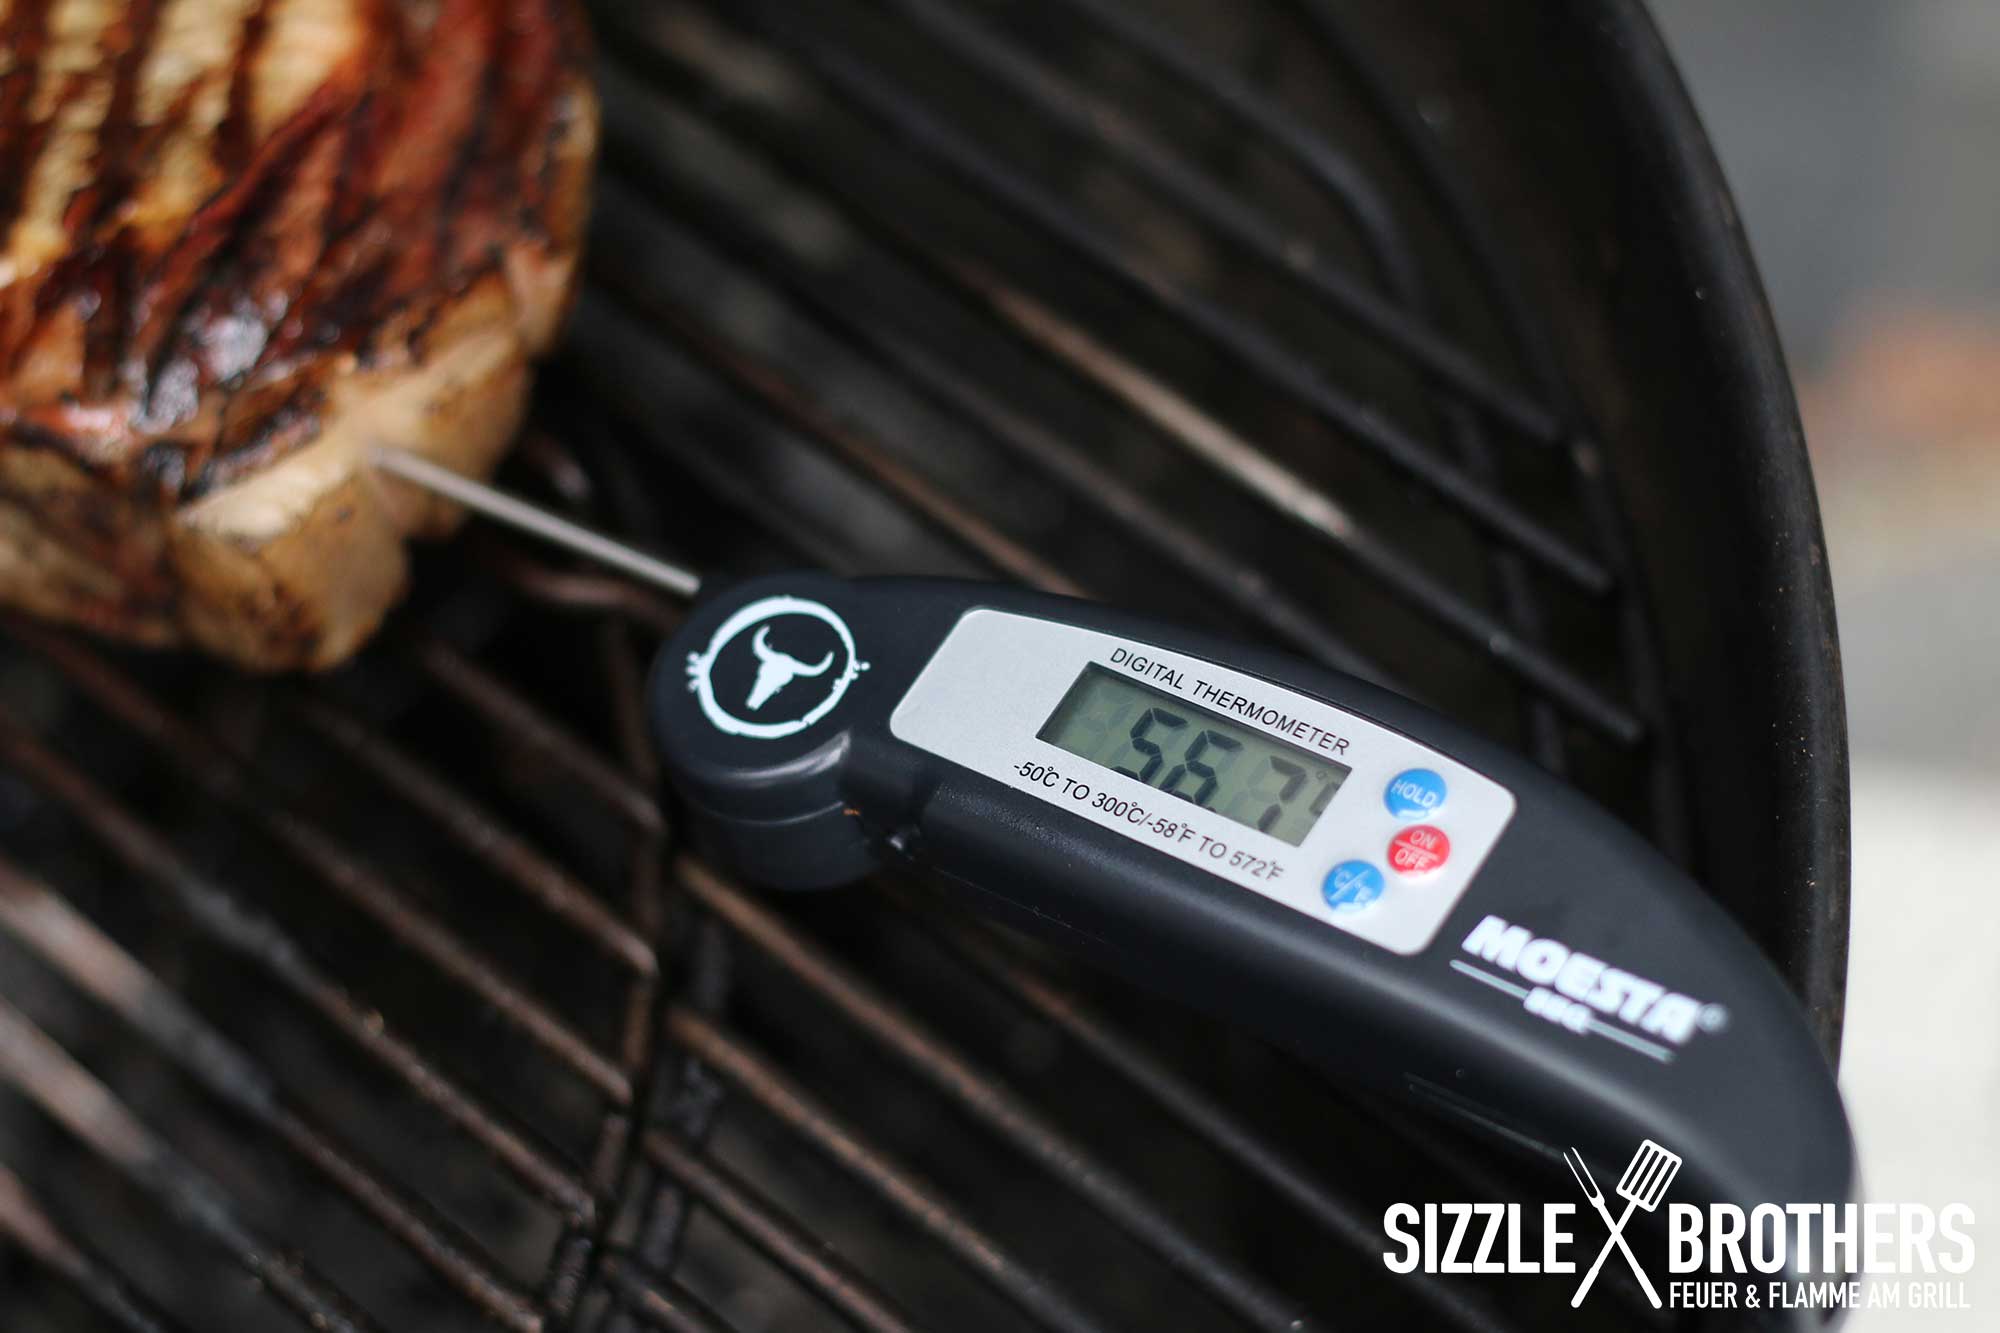 Steak wird mit Grillthermometer gemessen